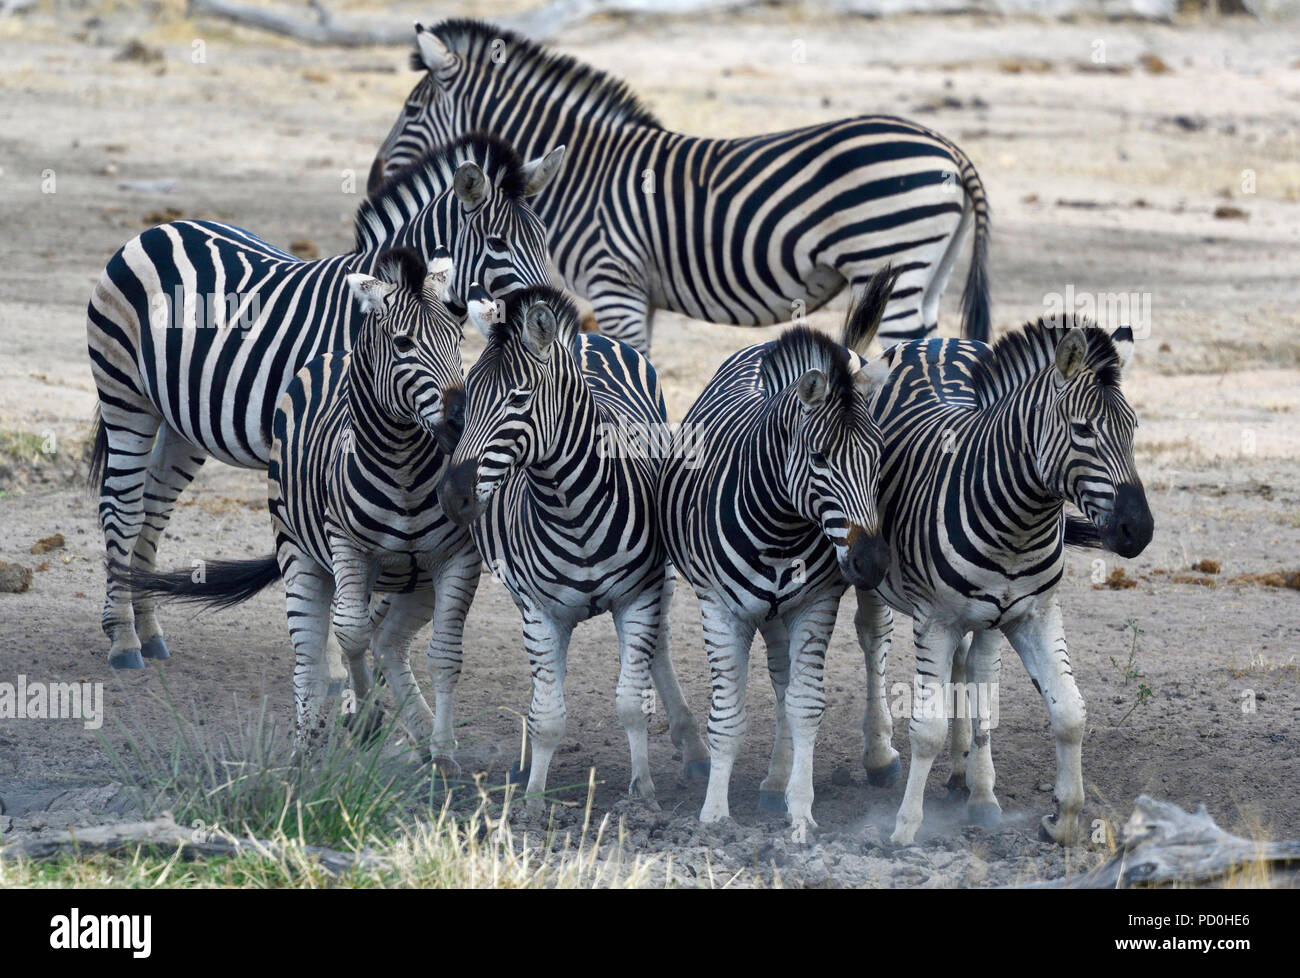 Südafrika, ein fantastisches Reiseziel Dritter und Erster Welt gemeinsam zu erleben. Zebra Streifen und Mustern, Kruger Park. Stockfoto